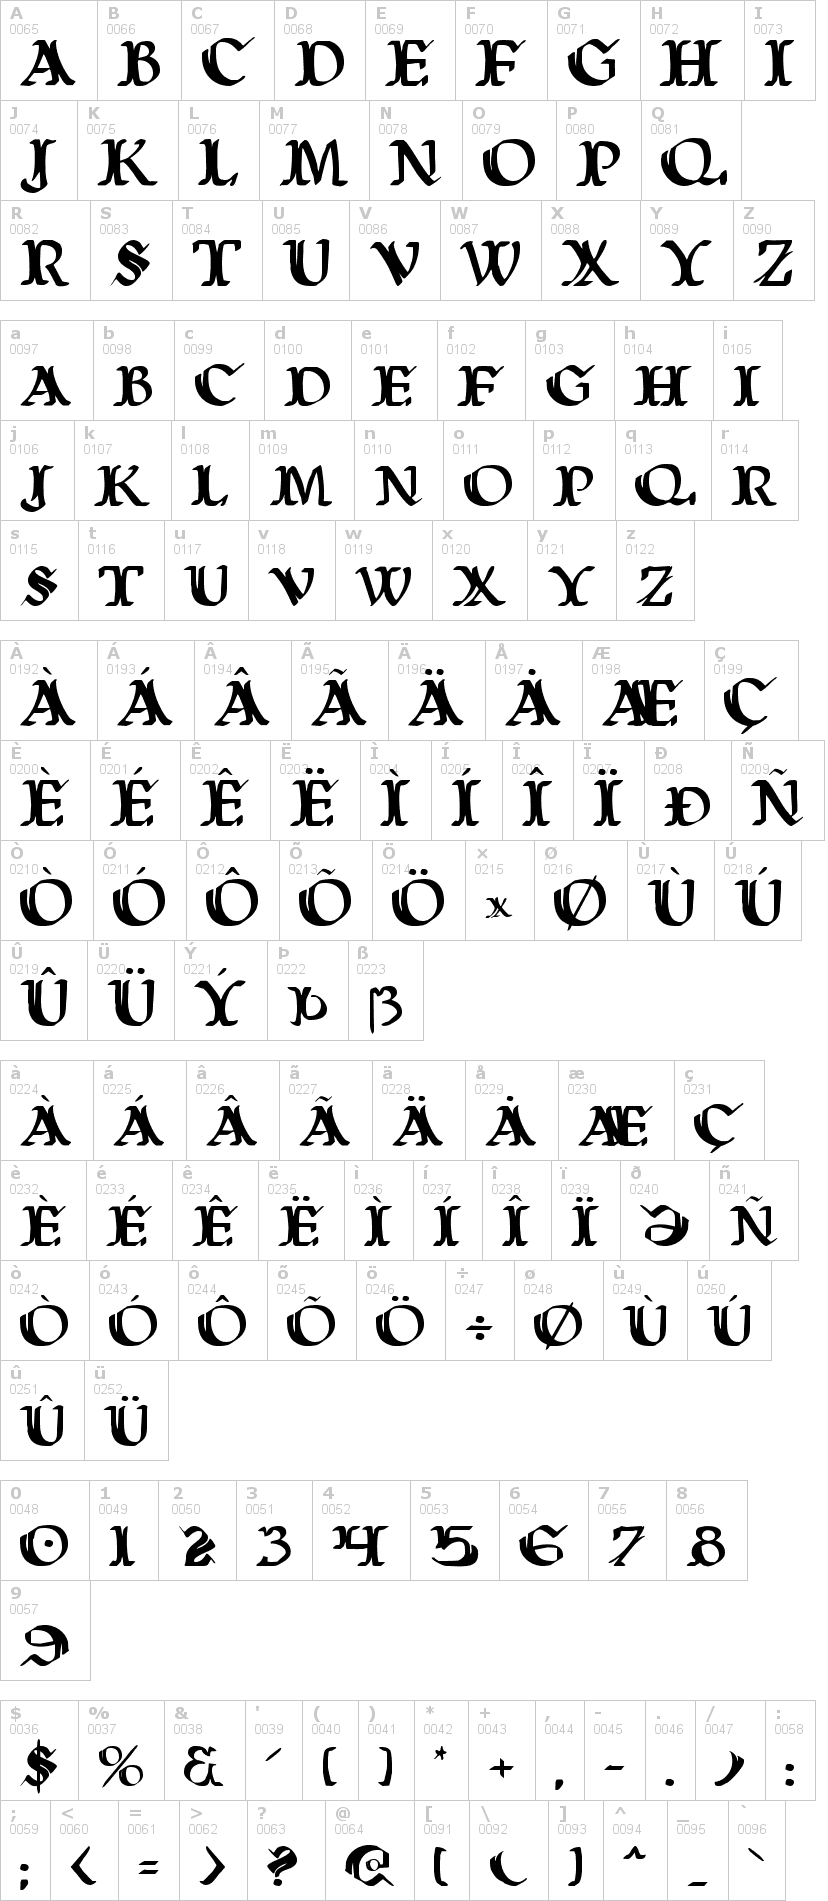 Lettere dell'alfabeto del font wars-of-asgard con le quali è possibile realizzare adesivi prespaziati